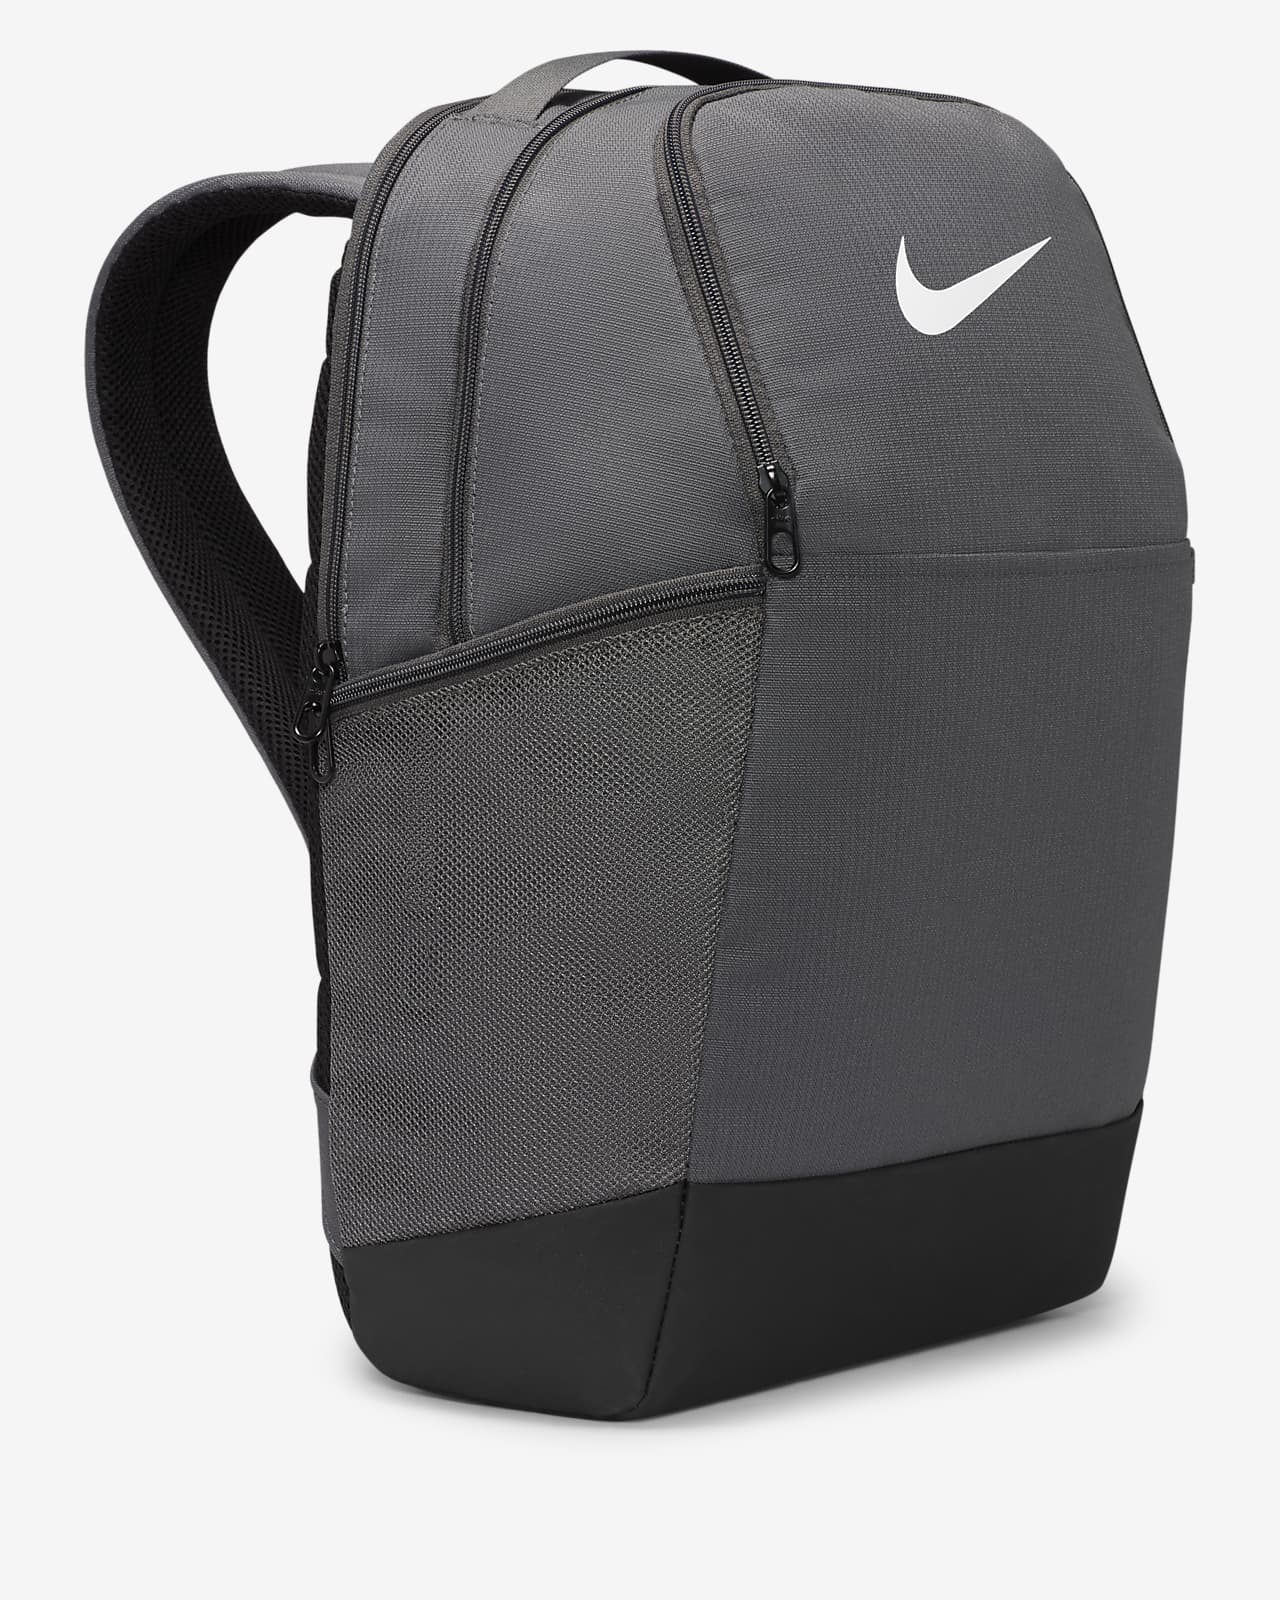 Nike Brasilia Winterized Graphic Training Backpack Black (Large, 24 L)